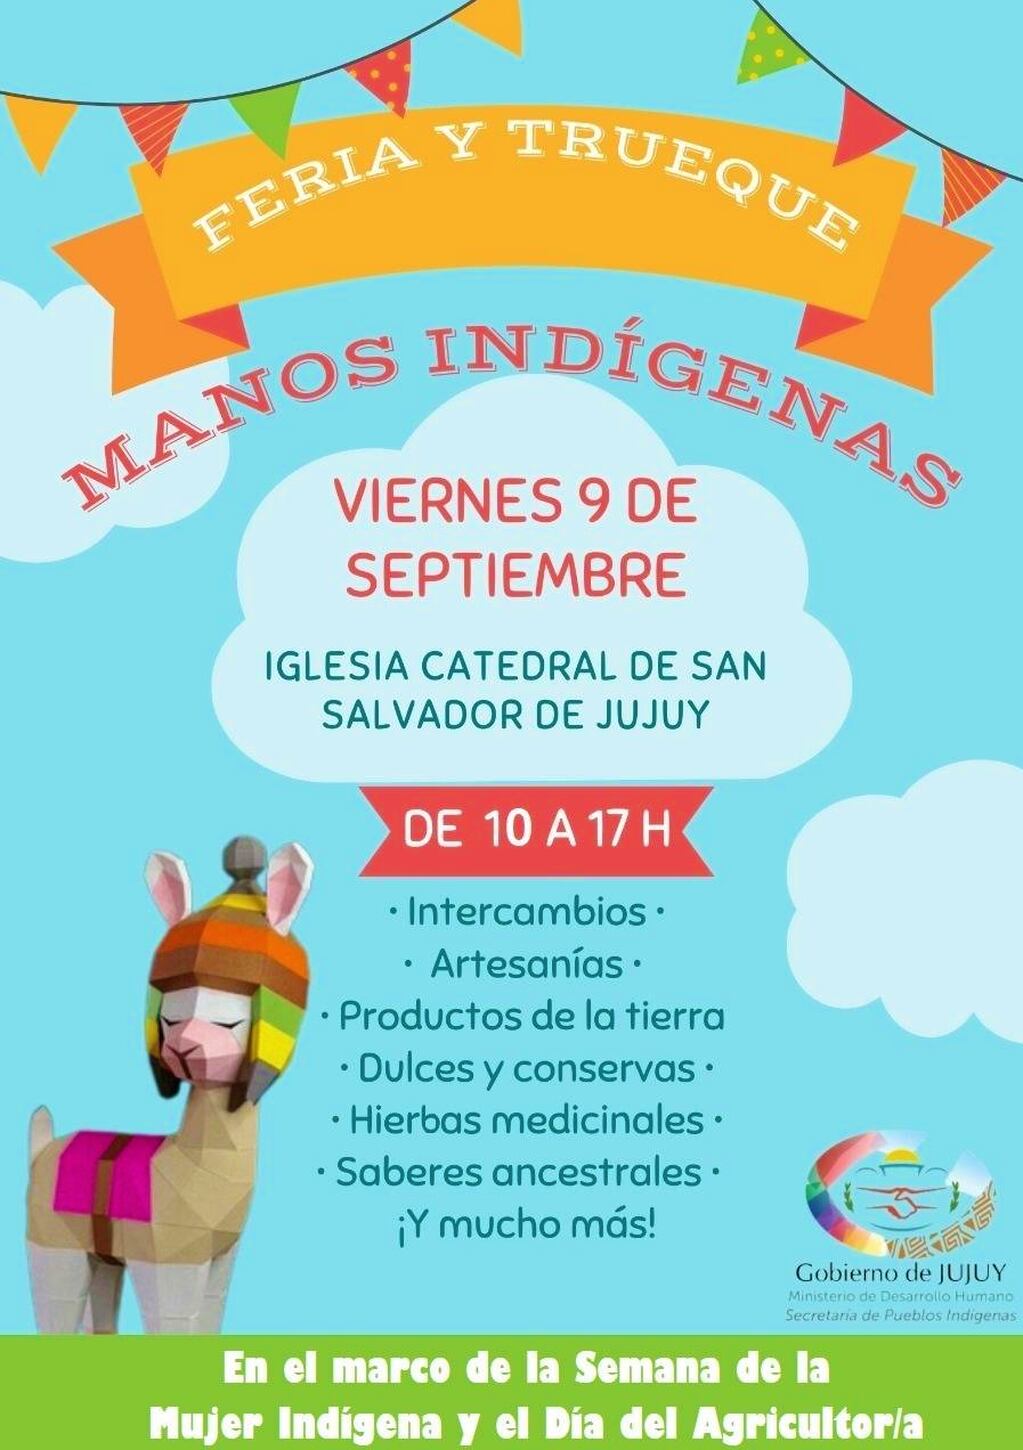 Este viernes habrá una actividad en San Salvador de Jujuy en el marco del Día Internacional de la Mujer Indígena.